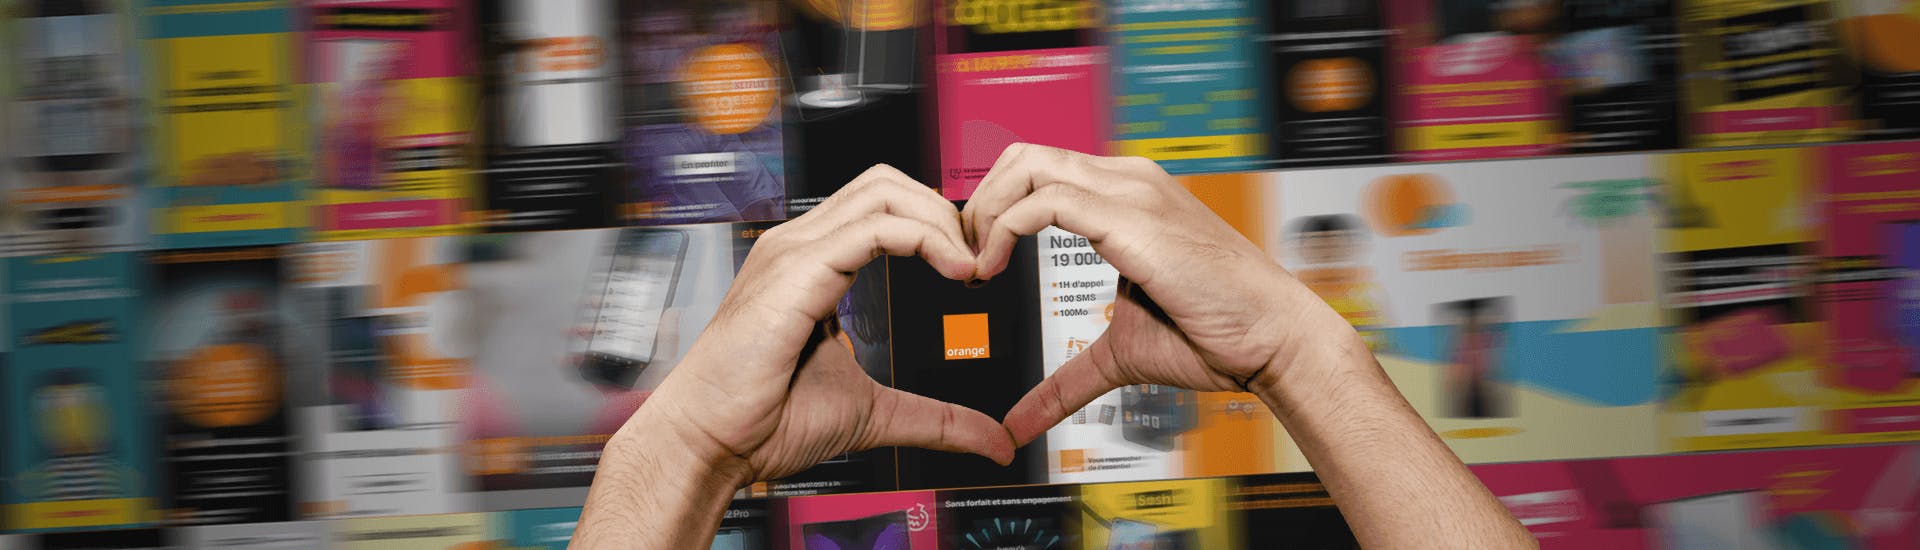 Deux mains forment un coeur devant un mur de publicités digitales pour l'opérateur Orange